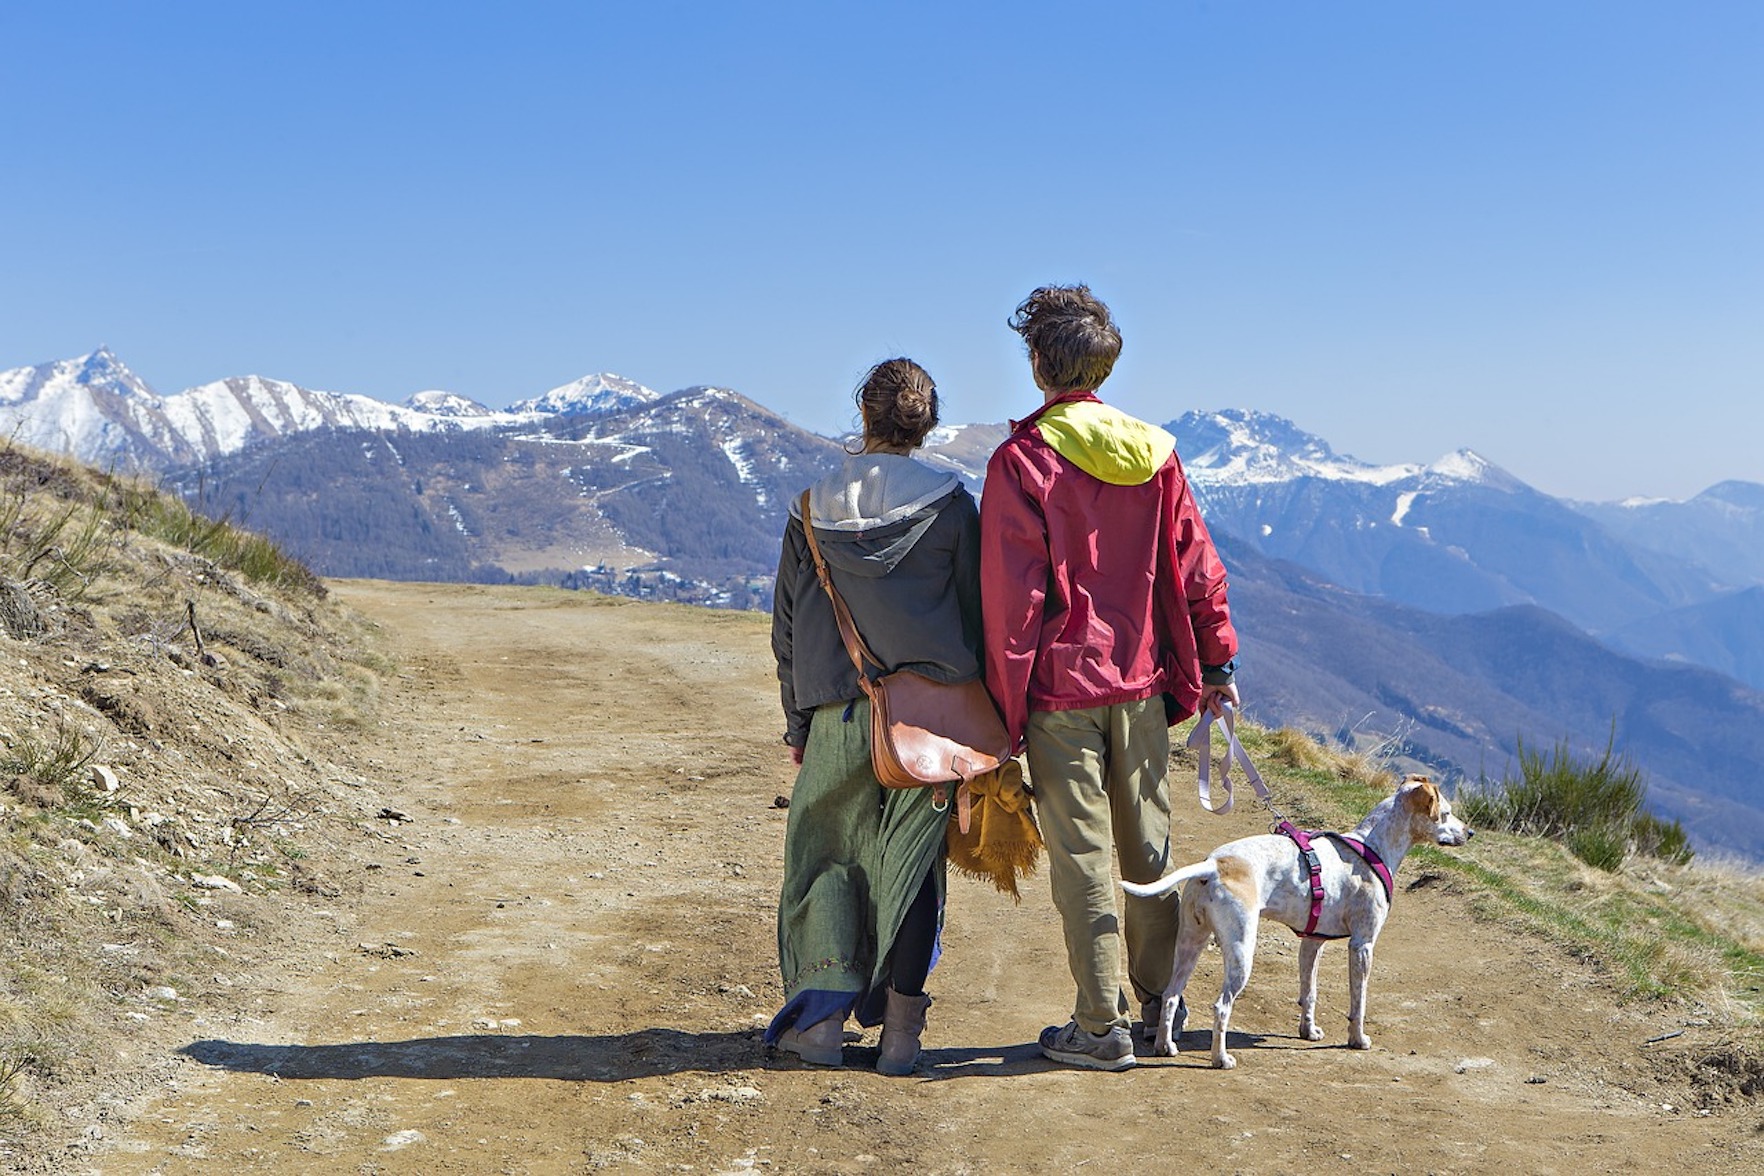 Tour Amichevole con il tuo Cane: Scopriamo insieme il Gran Sasso in Escursionismo